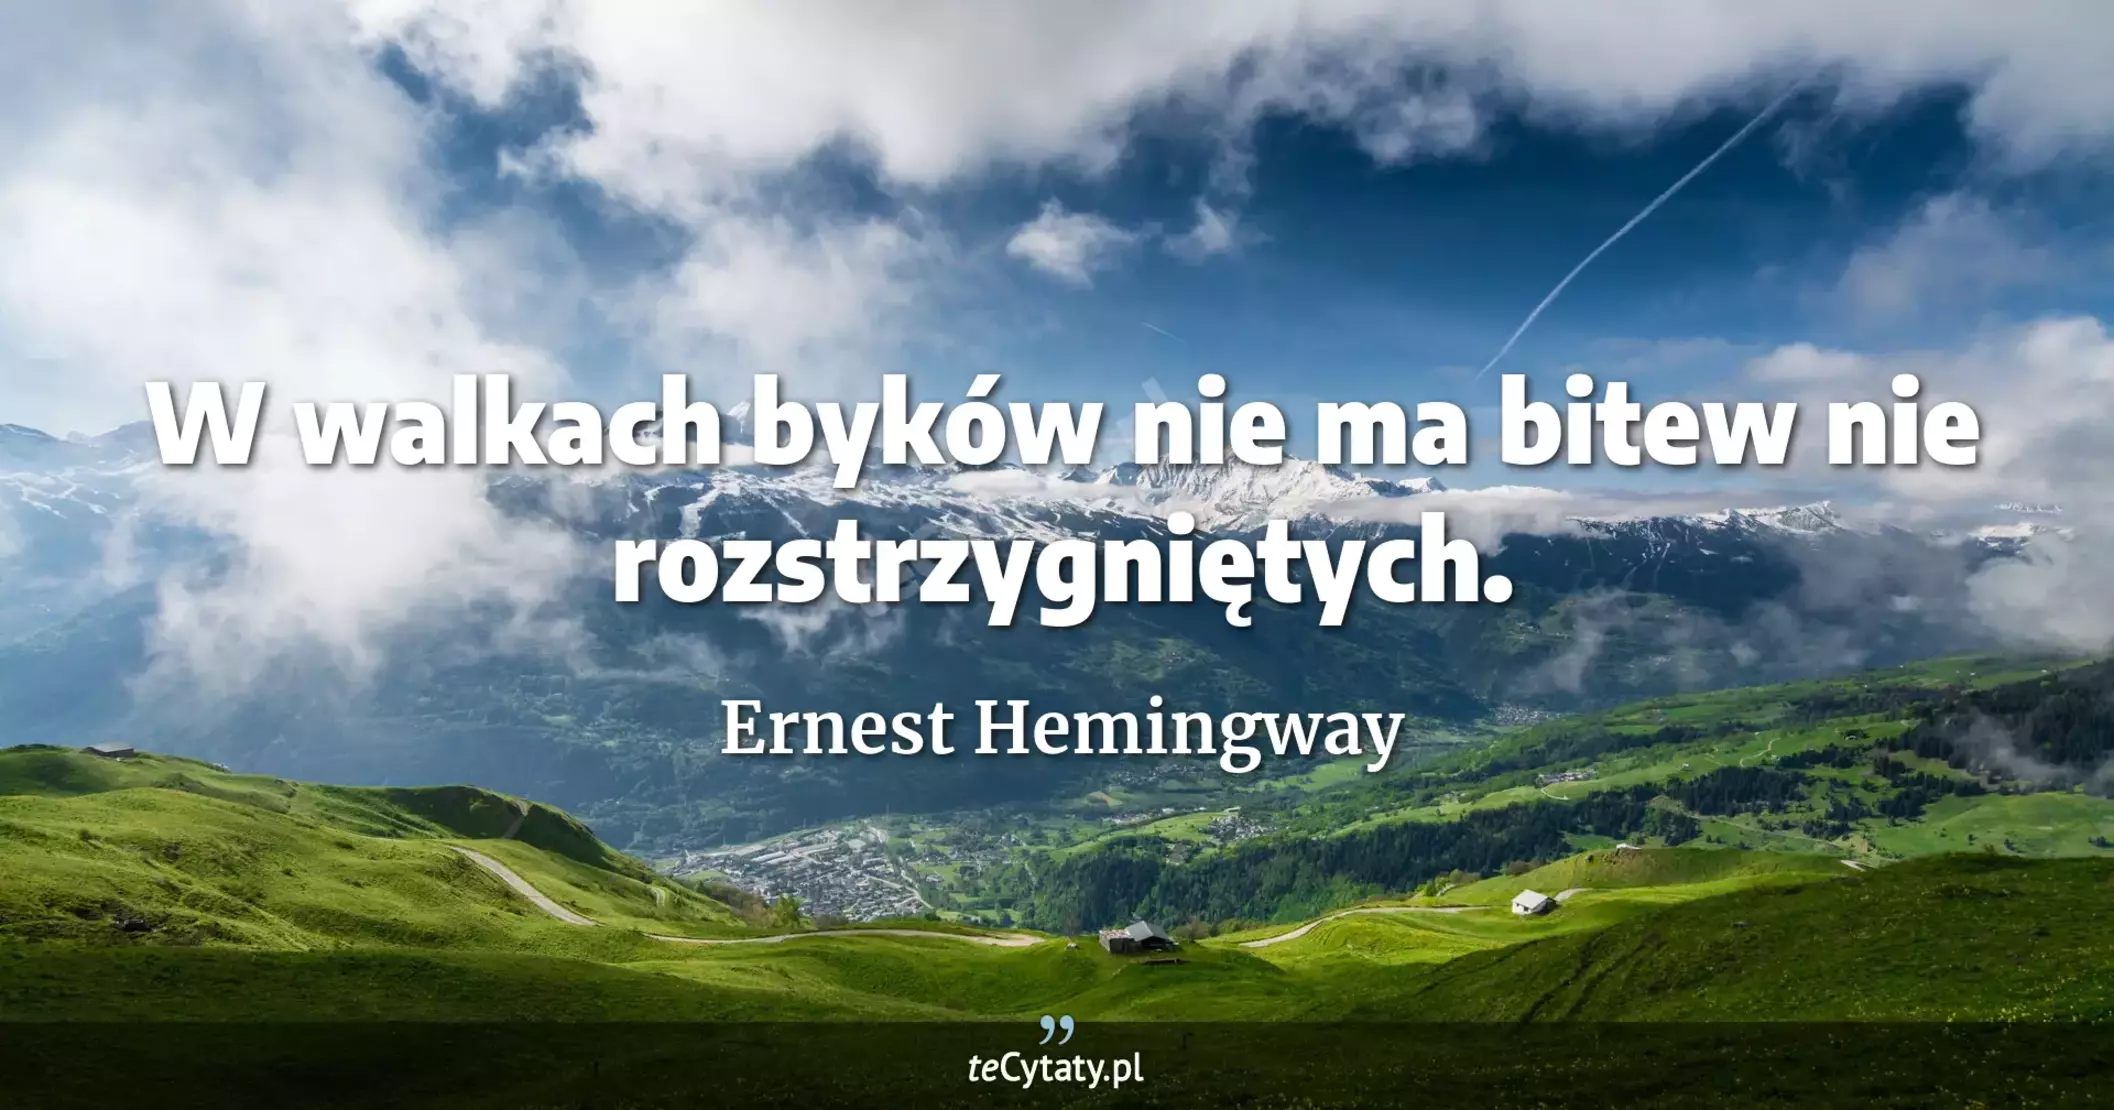 W walkach byków nie ma bitew nie rozstrzygniętych. - Ernest Hemingway